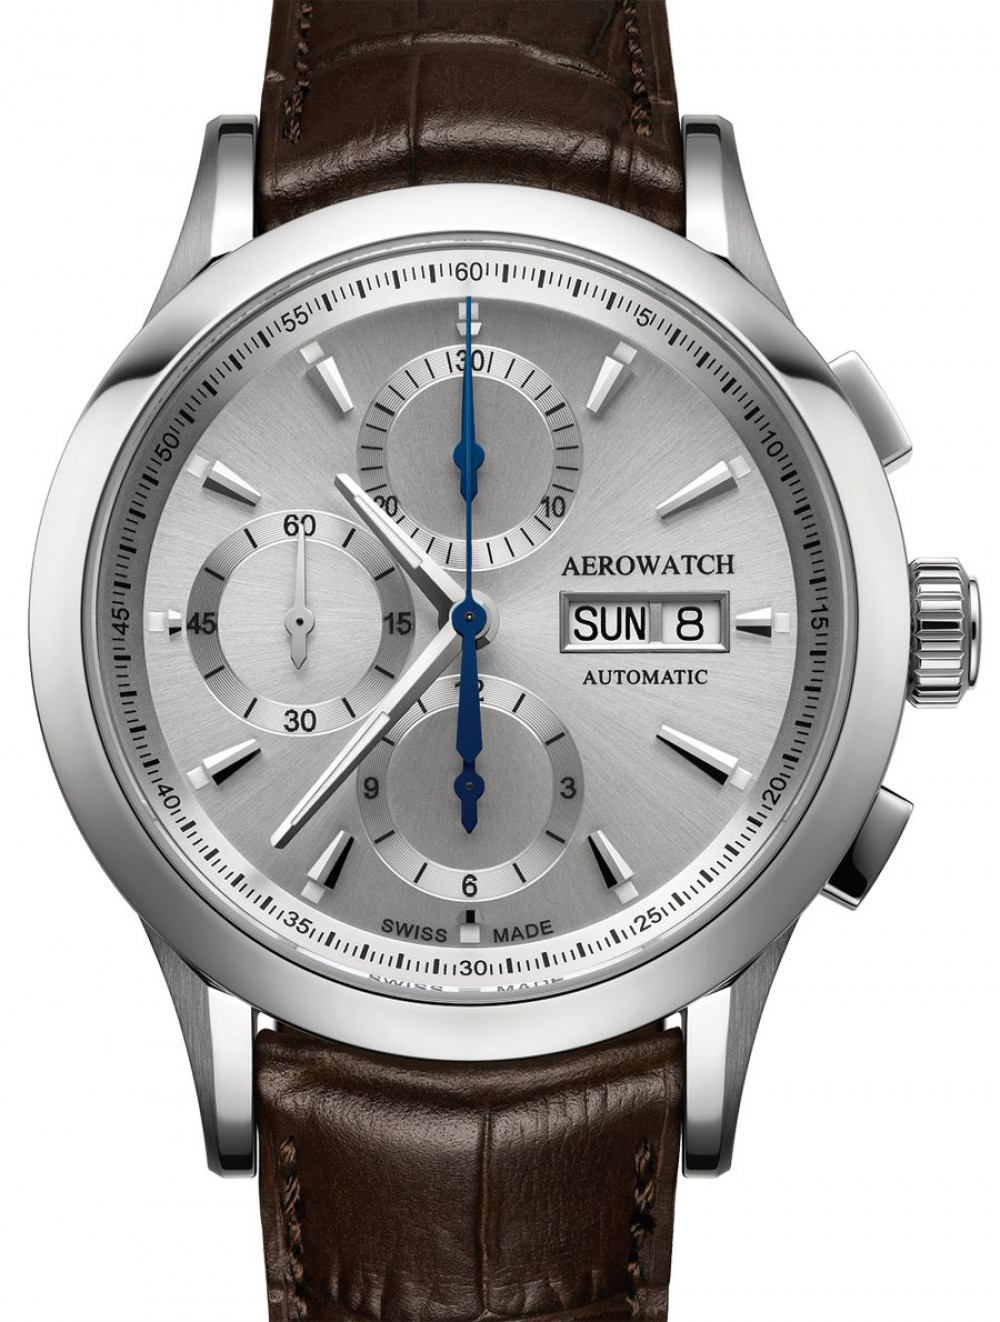 Zegarek firmy Aerowatch, model Chronograph Les Grandes Classiques